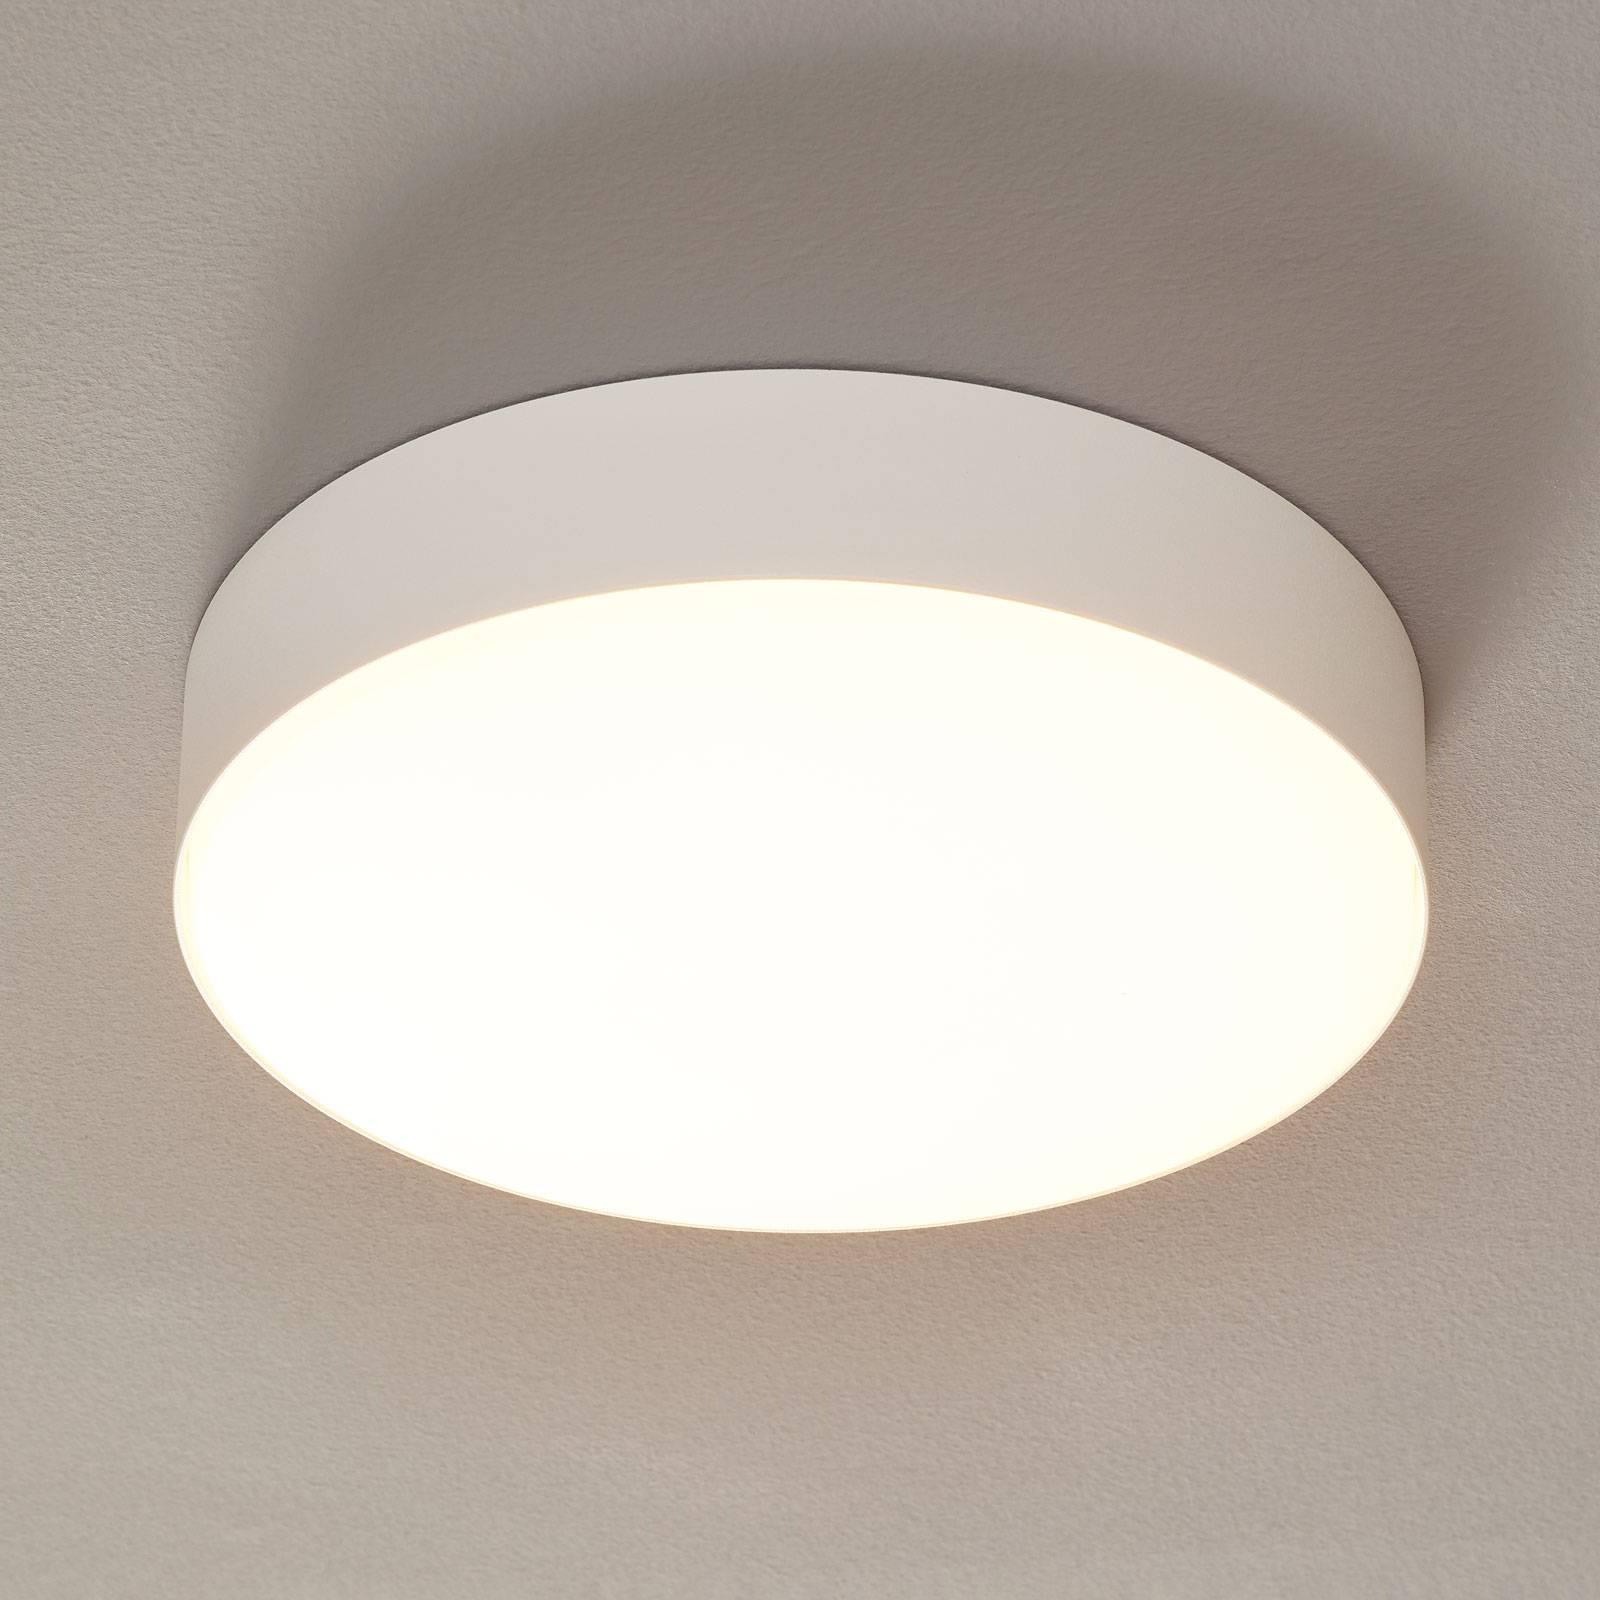 Wever & ducré lighting wever & ducré roby ip44 mennyezeti 2,700k 26 cm fehér